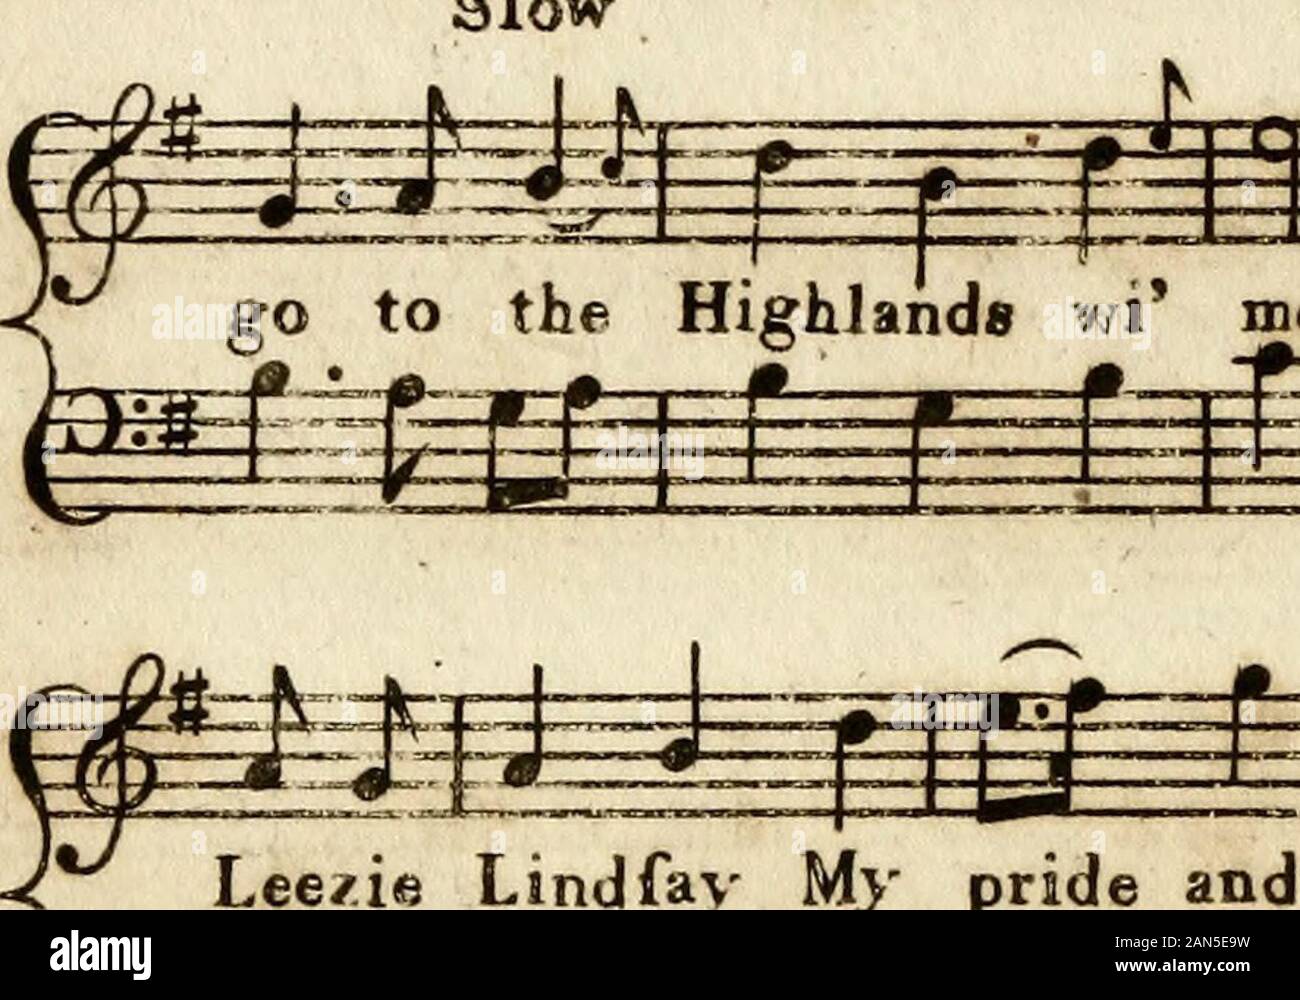 Les Écossais encore de musée : Composé de six cents chansons écossais avec des basses pour le forteHumbly piano dédié à la capture à EdinrJune 1771 Club mis en place. . 434 ** voulez-vous aller dans les Highlands Leezie Lindfay, voulez-vous 53H^ ^^f Slo - rendez les Highlands wi moi voulez-vous rendez les Highlands. f m wm III °i-f-t = : gEgfa^J-S Lindfav Leezie fni ma fierté et mon dar ling à l'être. ^ ^ 32 €  +  +  +  +  +  +  +  +  + 4-  +  +  +  +  +  +  + ?  +L'Ocean Inn épouse ayont l'incendie. Banque D'Images